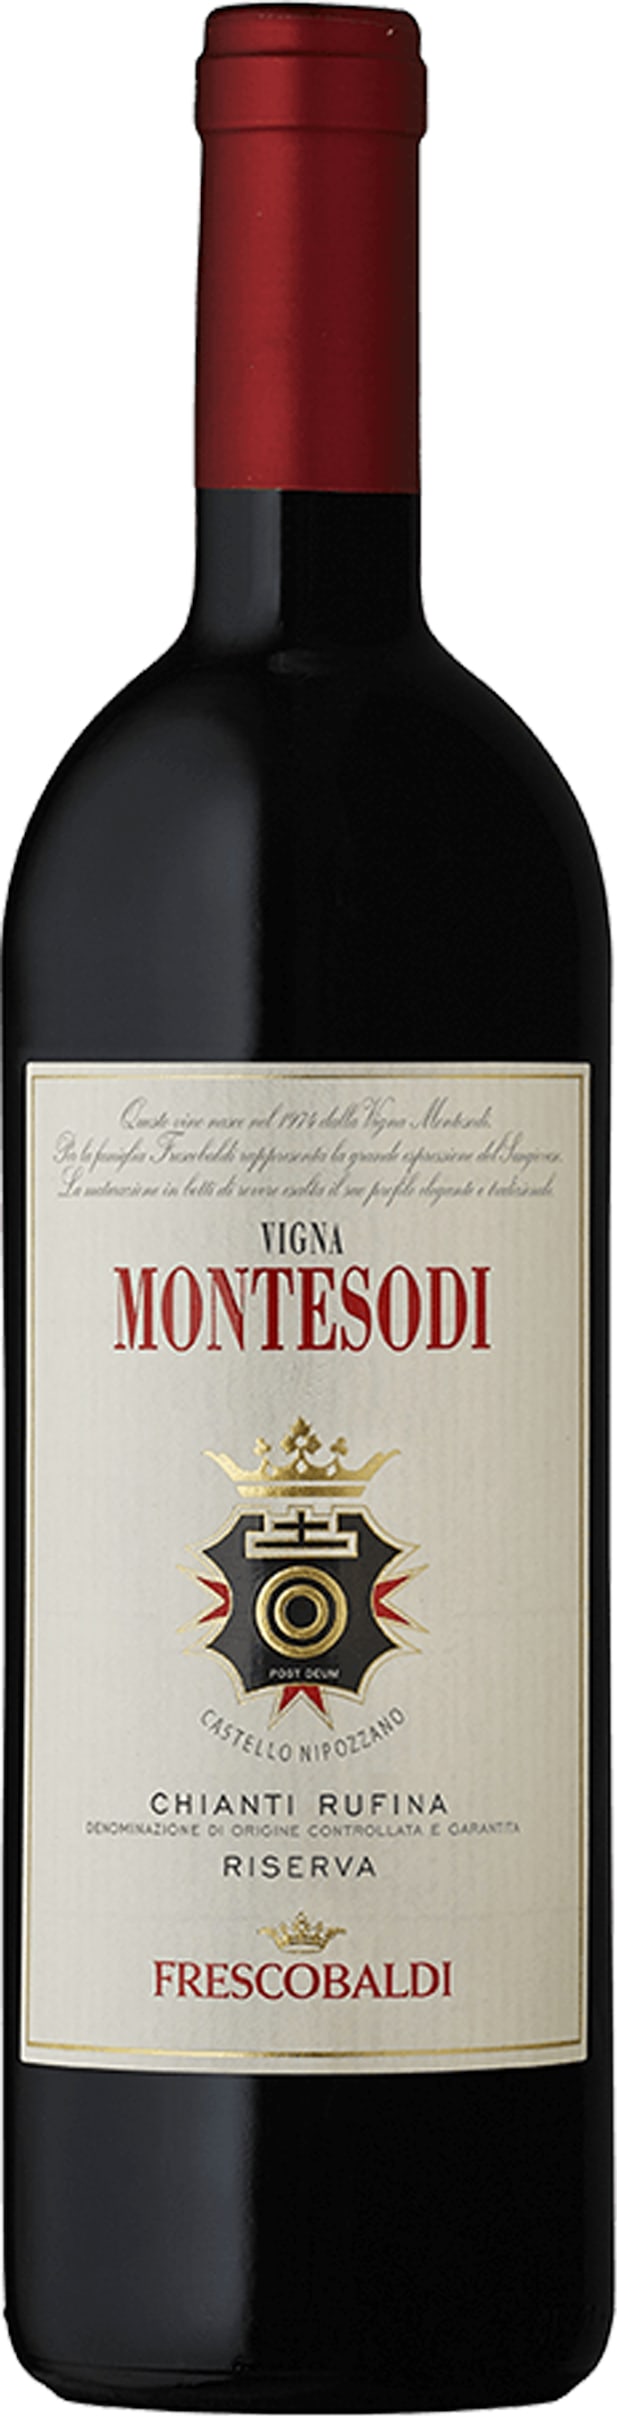 Frescobaldi Montesodi 2010 75cl - Buy Frescobaldi Wines from GREAT WINES DIRECT wine shop